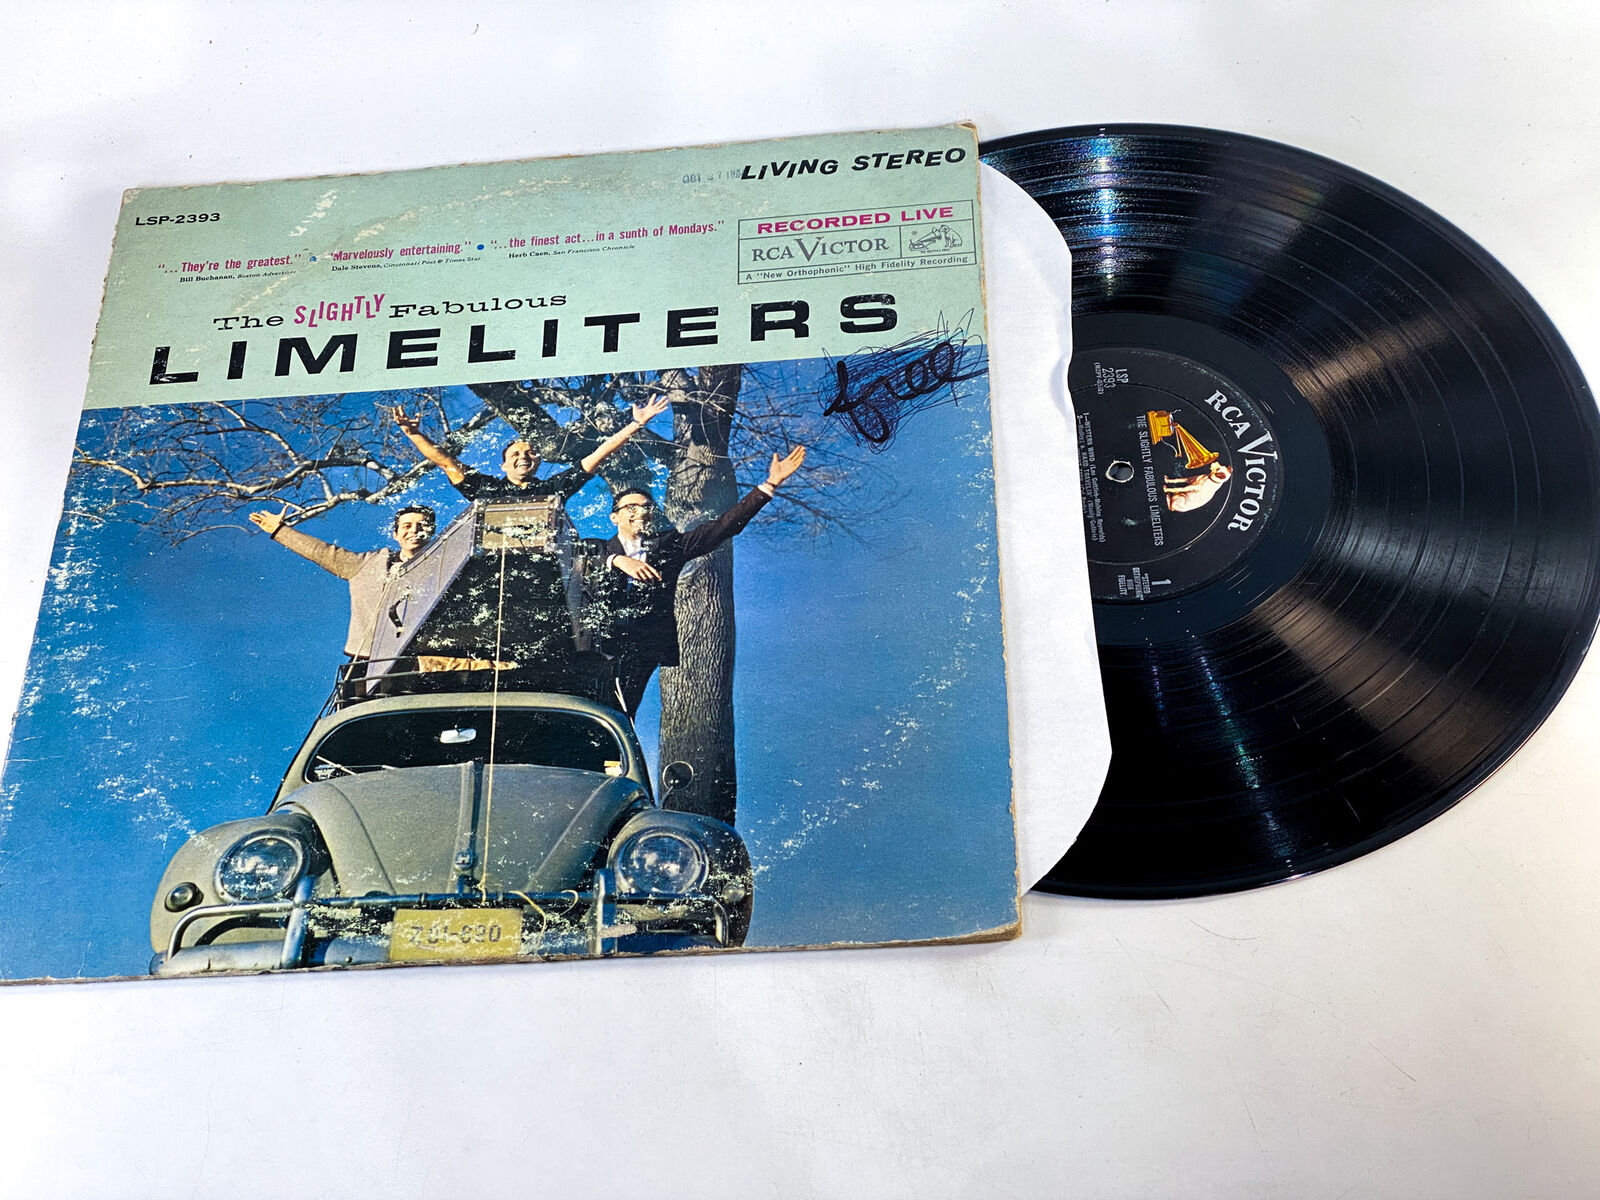 The Limeliters-The Slightly Fabulous Limelite...-Vinyl Record VG+/G+